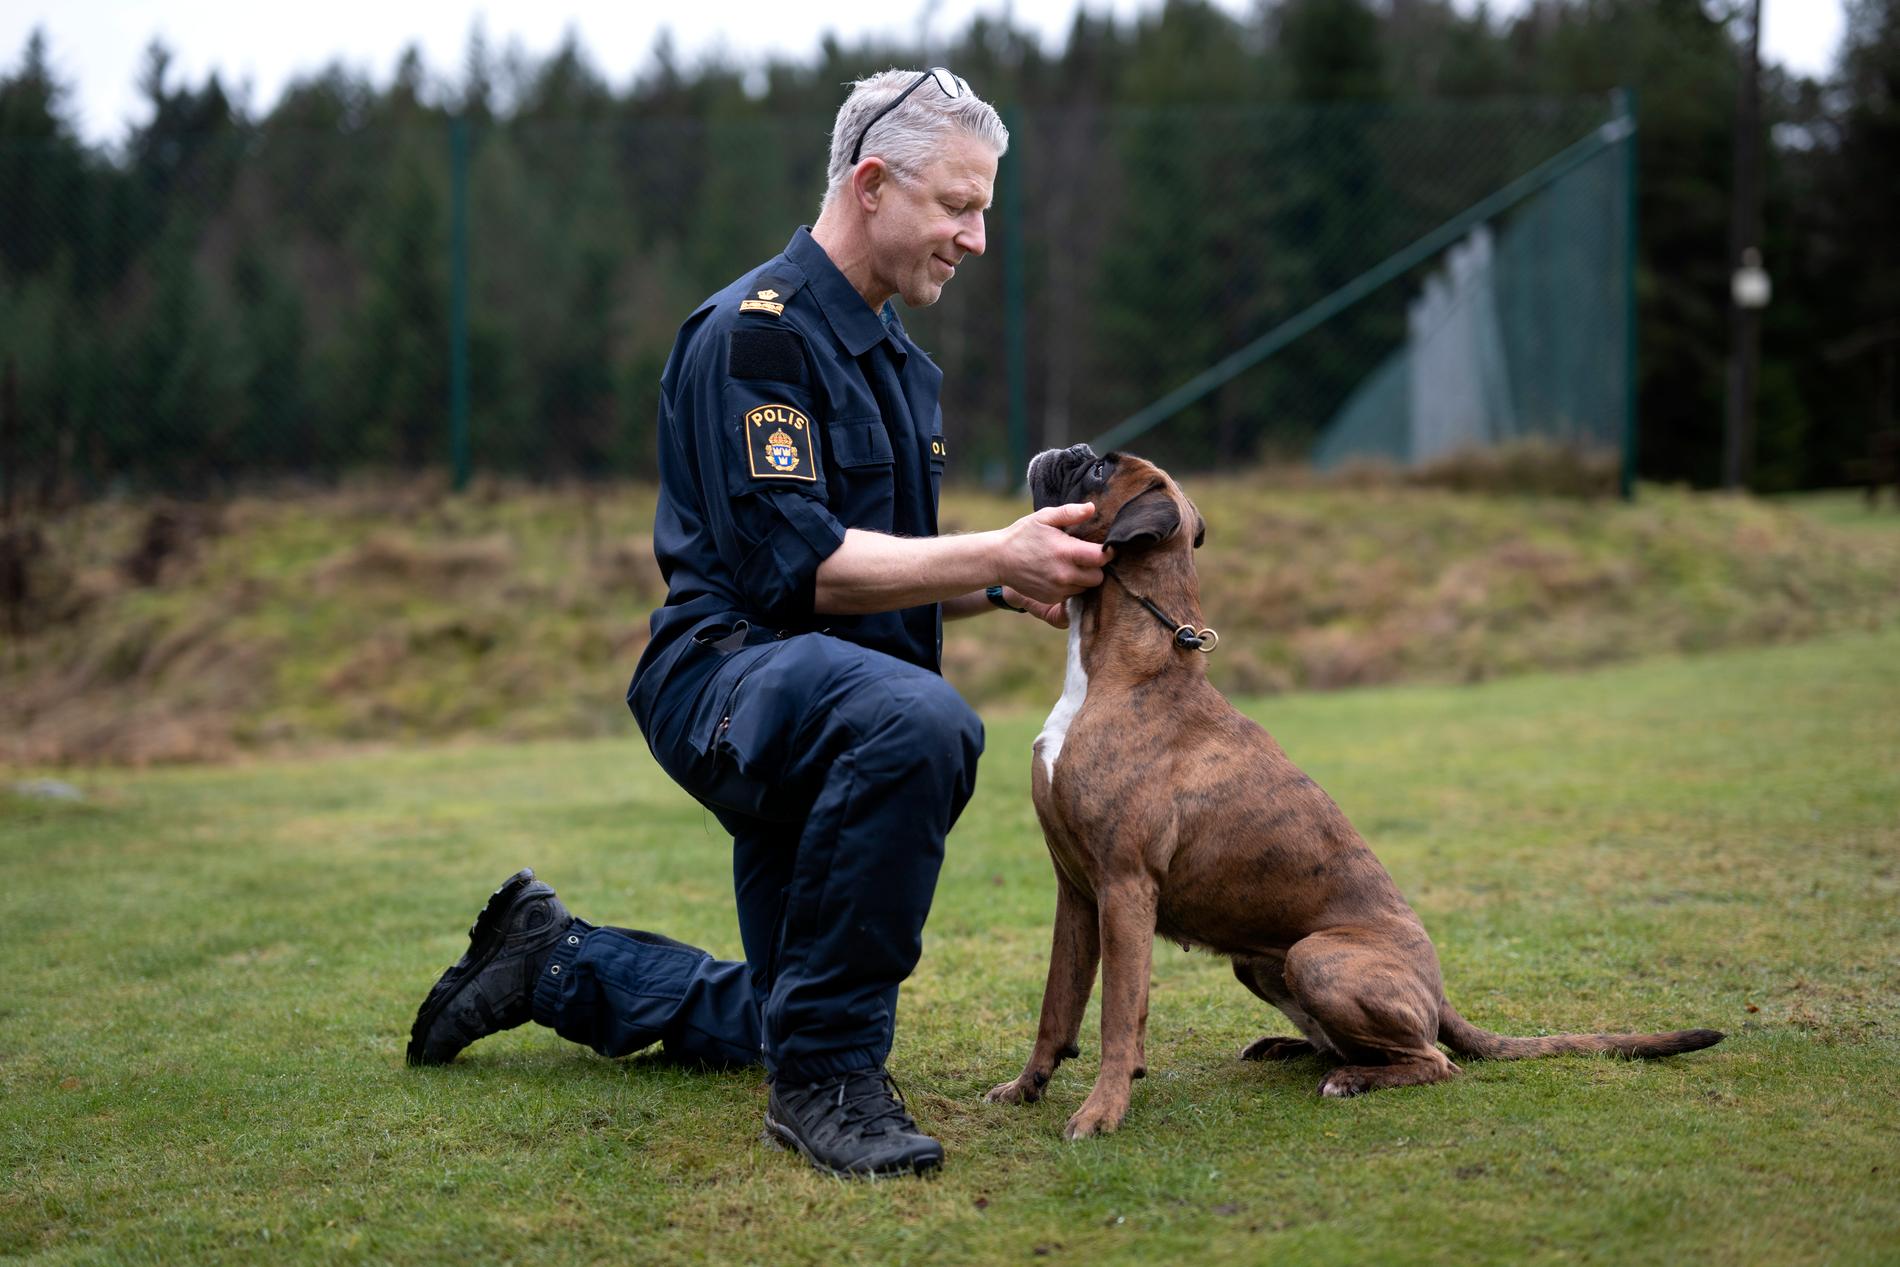 "Det kan vara en jättebra hund och en jättebra förare, men passar de inte ihop så går det inte. Med ett större utbud av hundar så är det mycket lättare att hitta rätt hund till rätt förare", säger Robert Lindström, som är förare till tiken Dundra.